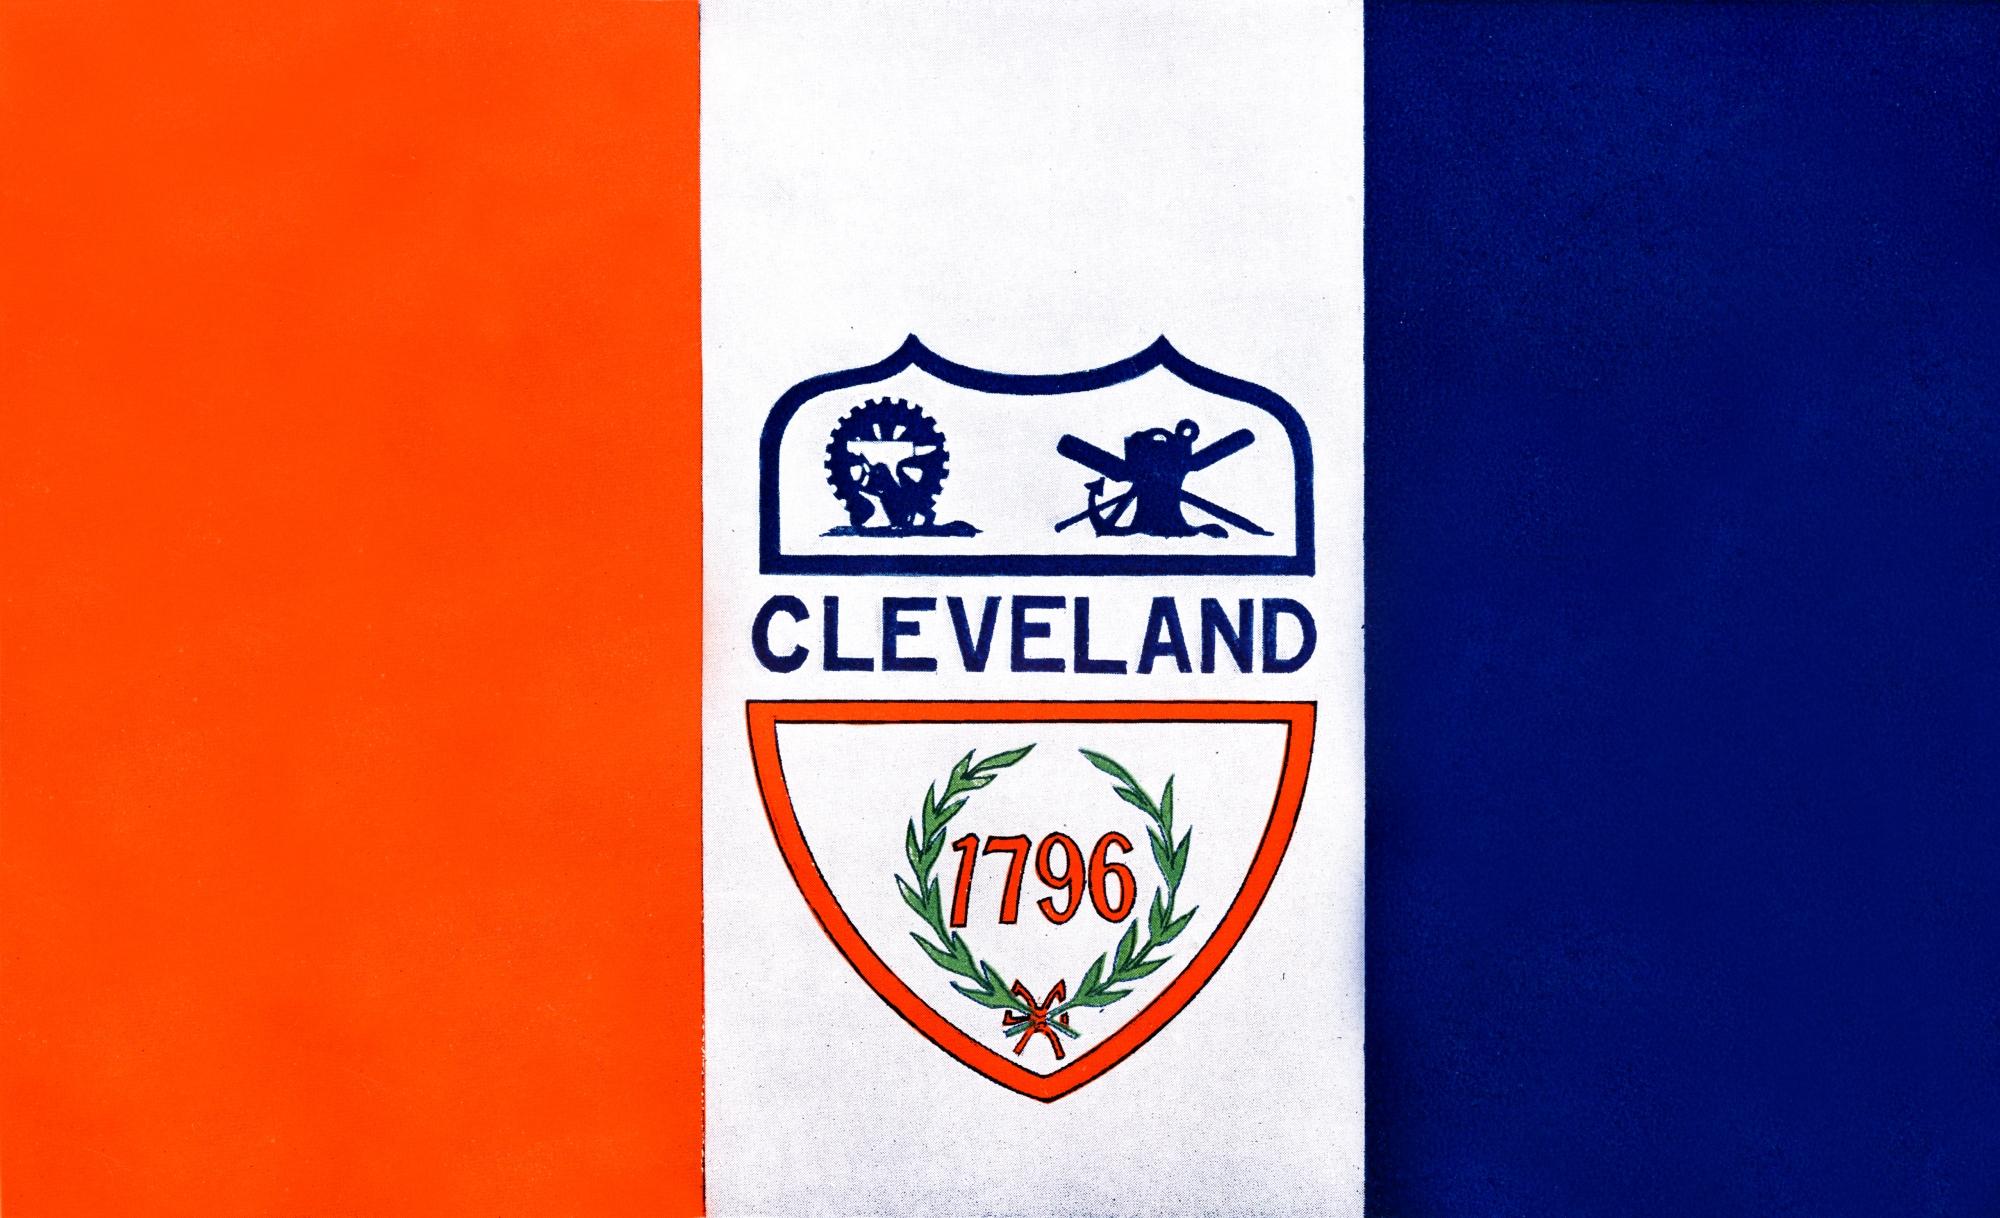 Susan Hepburn's original design for the municipal flag of Cleveland